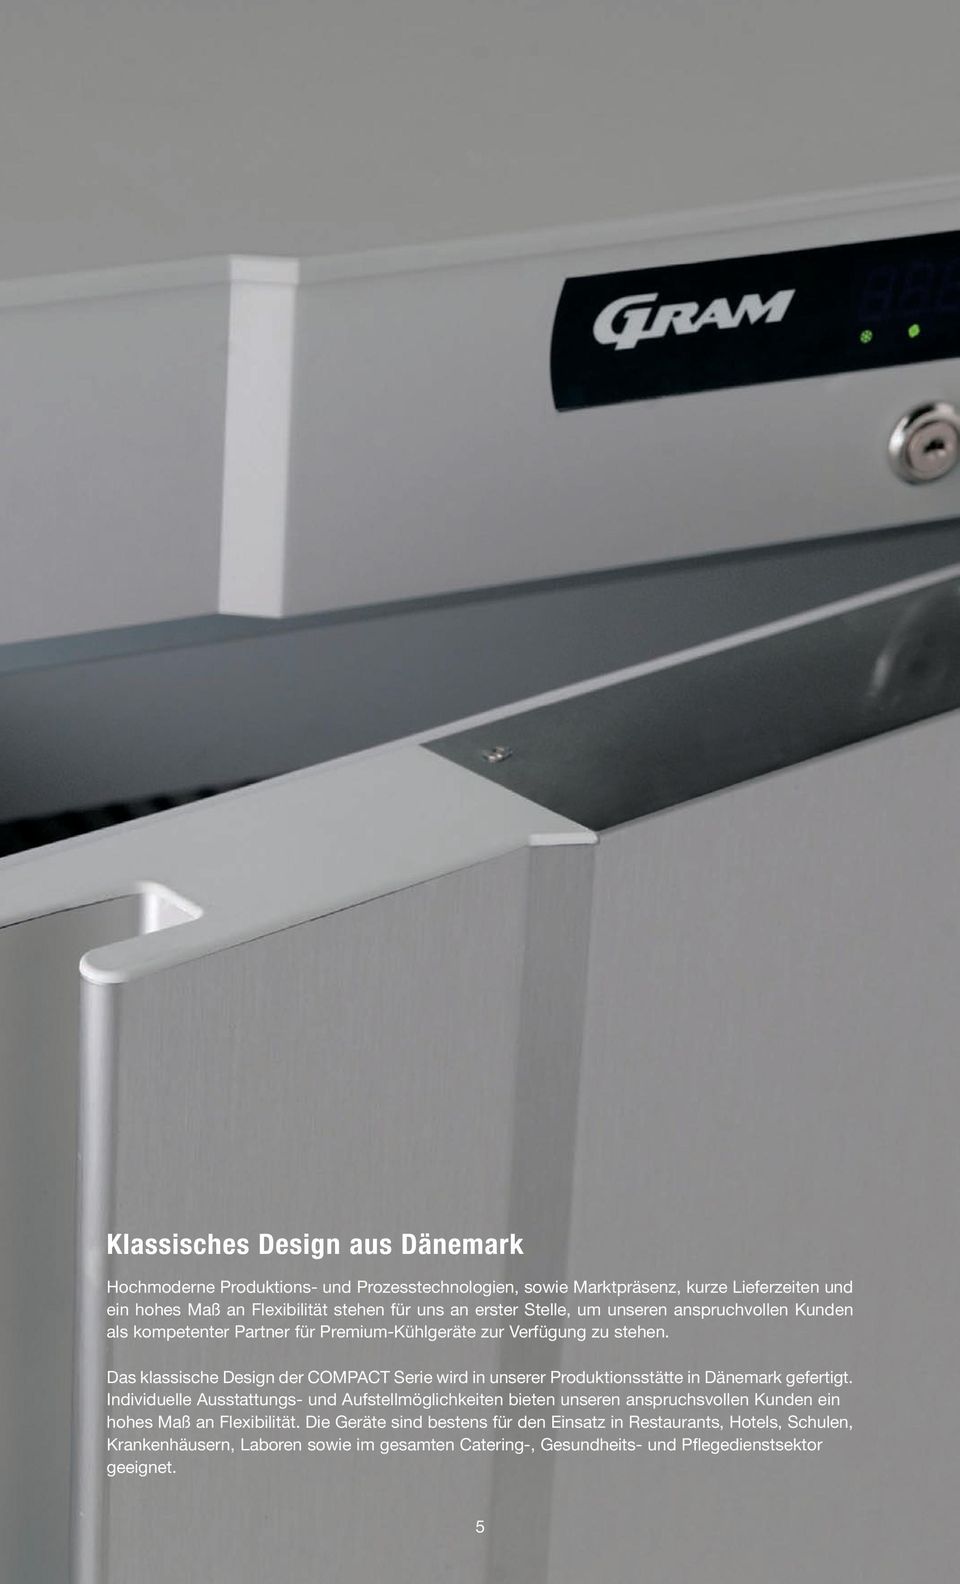 Das klassische Design der COMPACT Serie wird in unserer Produktionsstätte in Dänemark gefertigt.